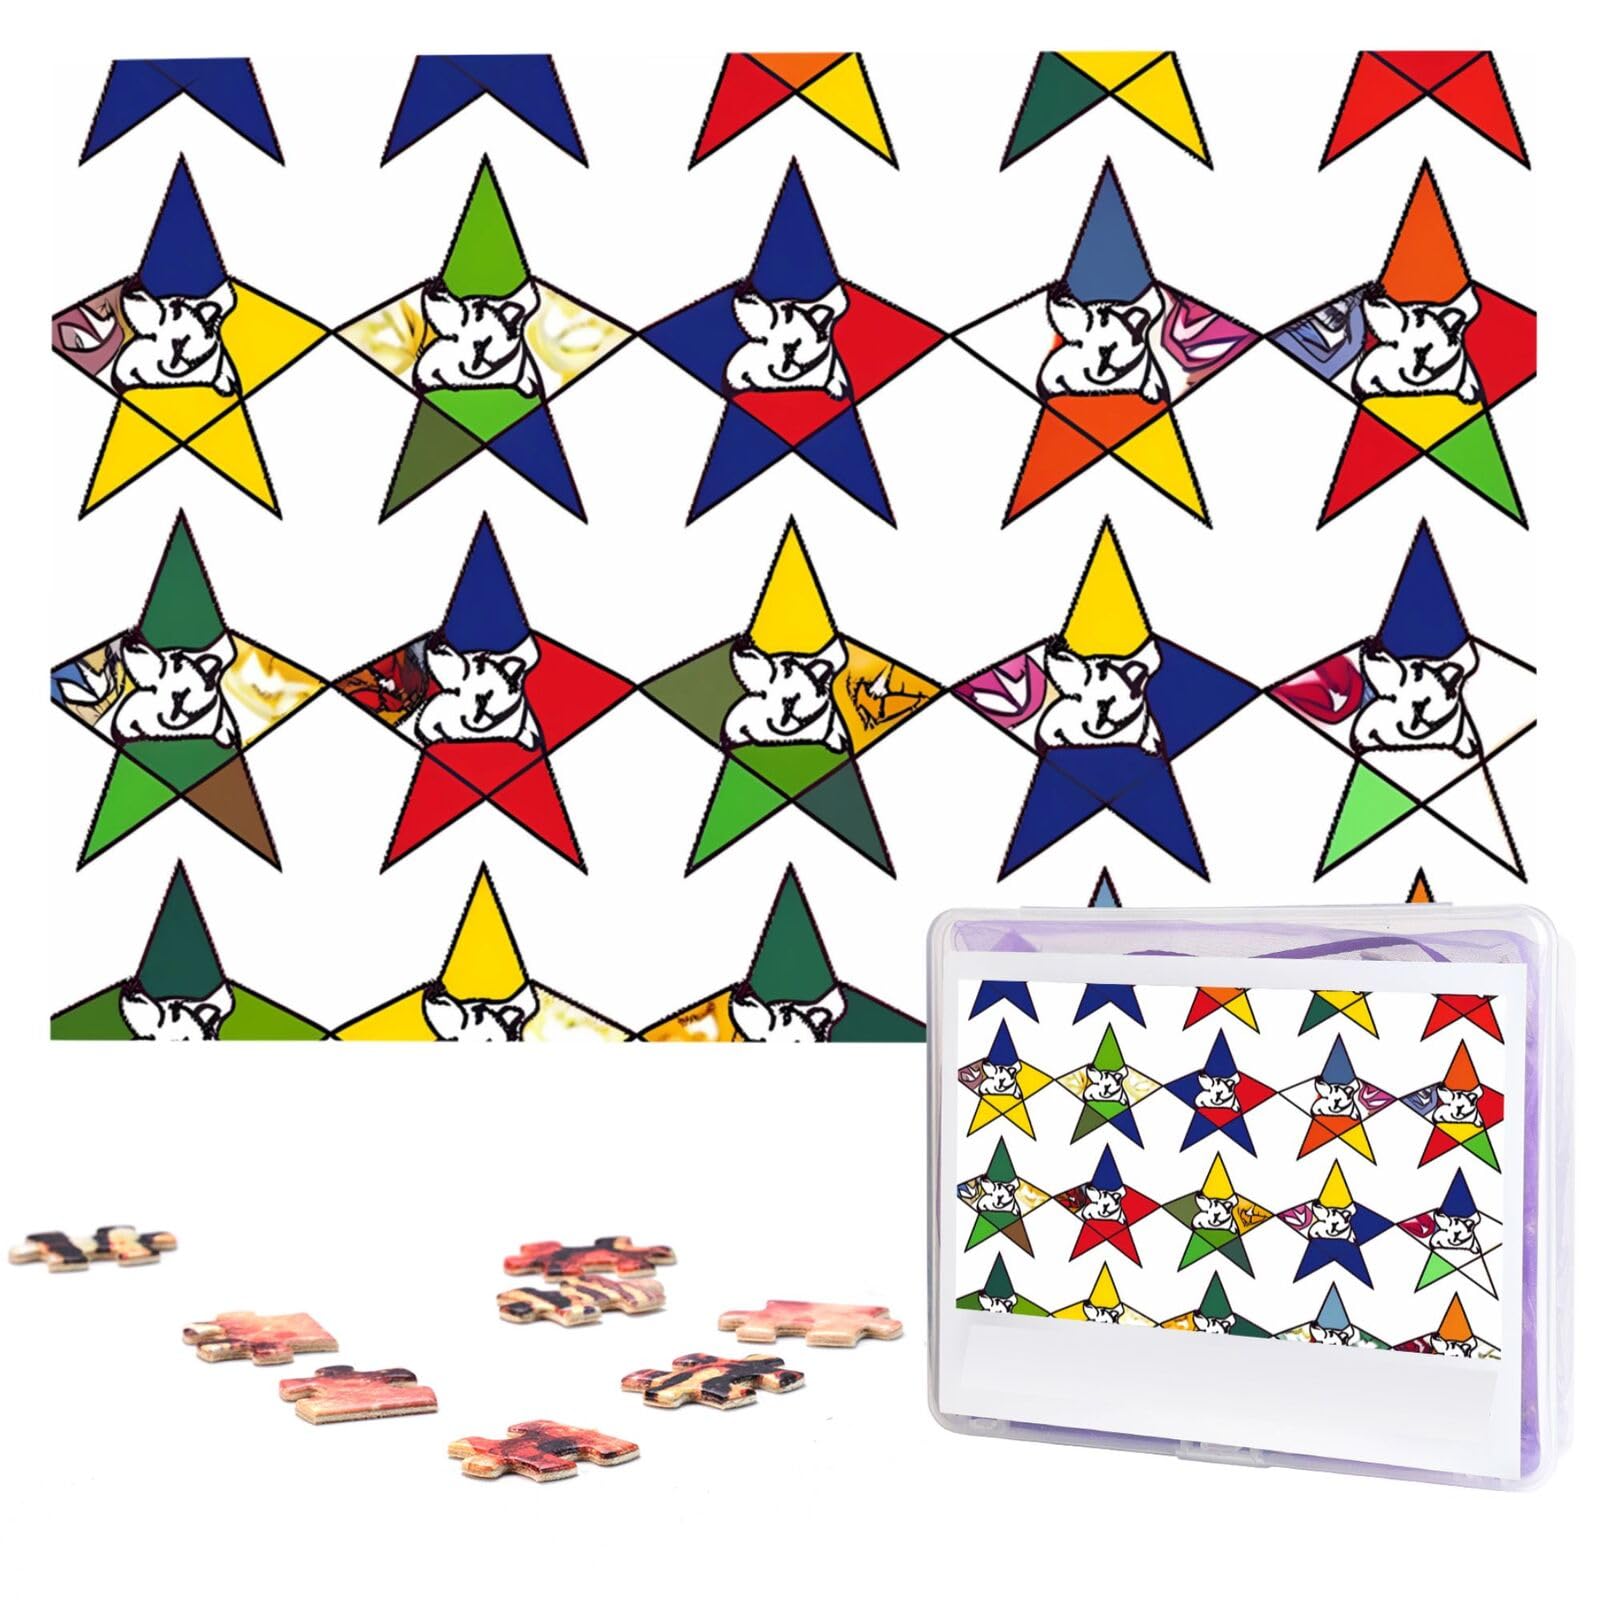 KHiry Puzzles 1000 Teile personalisierte Puzzles Sterne östliche Sterne Fotopuzzle anspruchsvolles Bildpuzzle für Erwachsene Personaliz Puzzle mit Aufbewahrungstasche (74,9 x 50 cm)